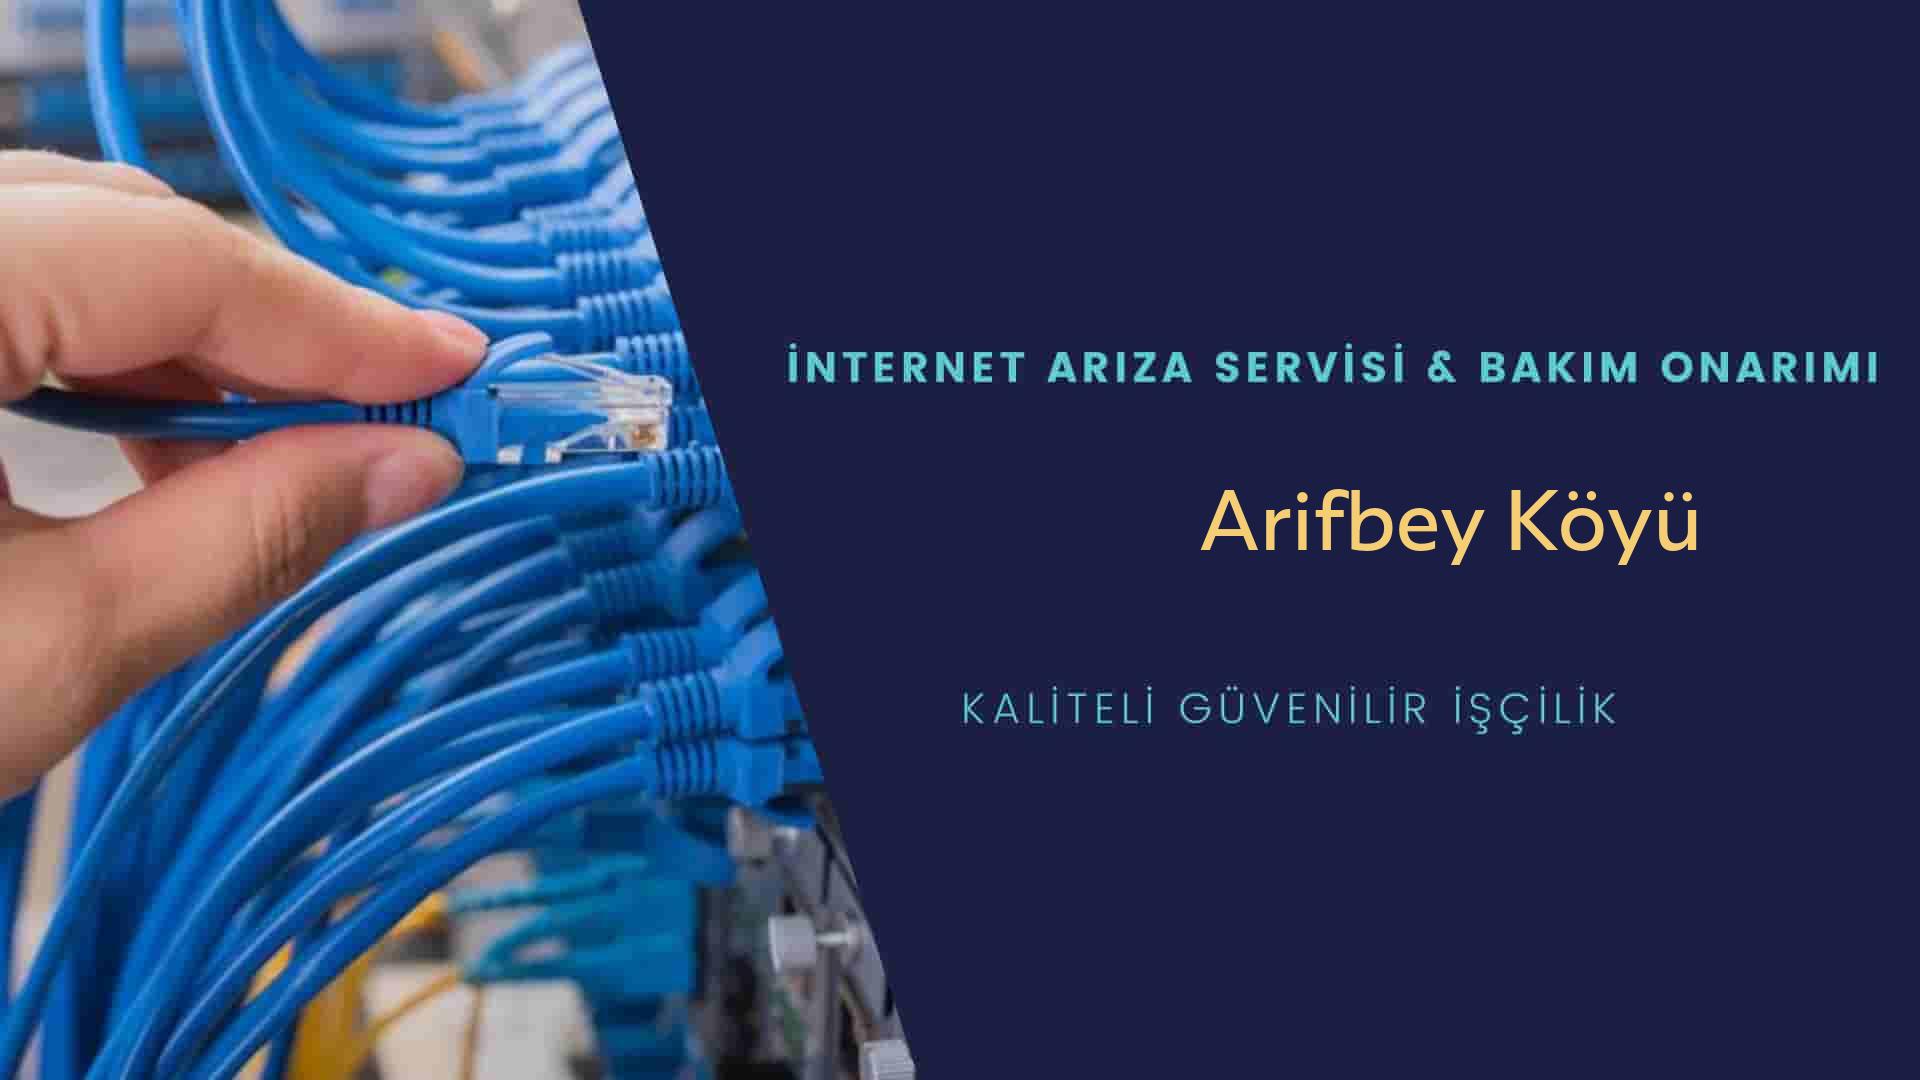 Arifbey Köyü internet kablosu çekimi yapan yerler veya elektrikçiler mi? arıyorsunuz doğru yerdesiniz o zaman sizlere 7/24 yardımcı olacak profesyonel ustalarımız bir telefon kadar yakındır size.